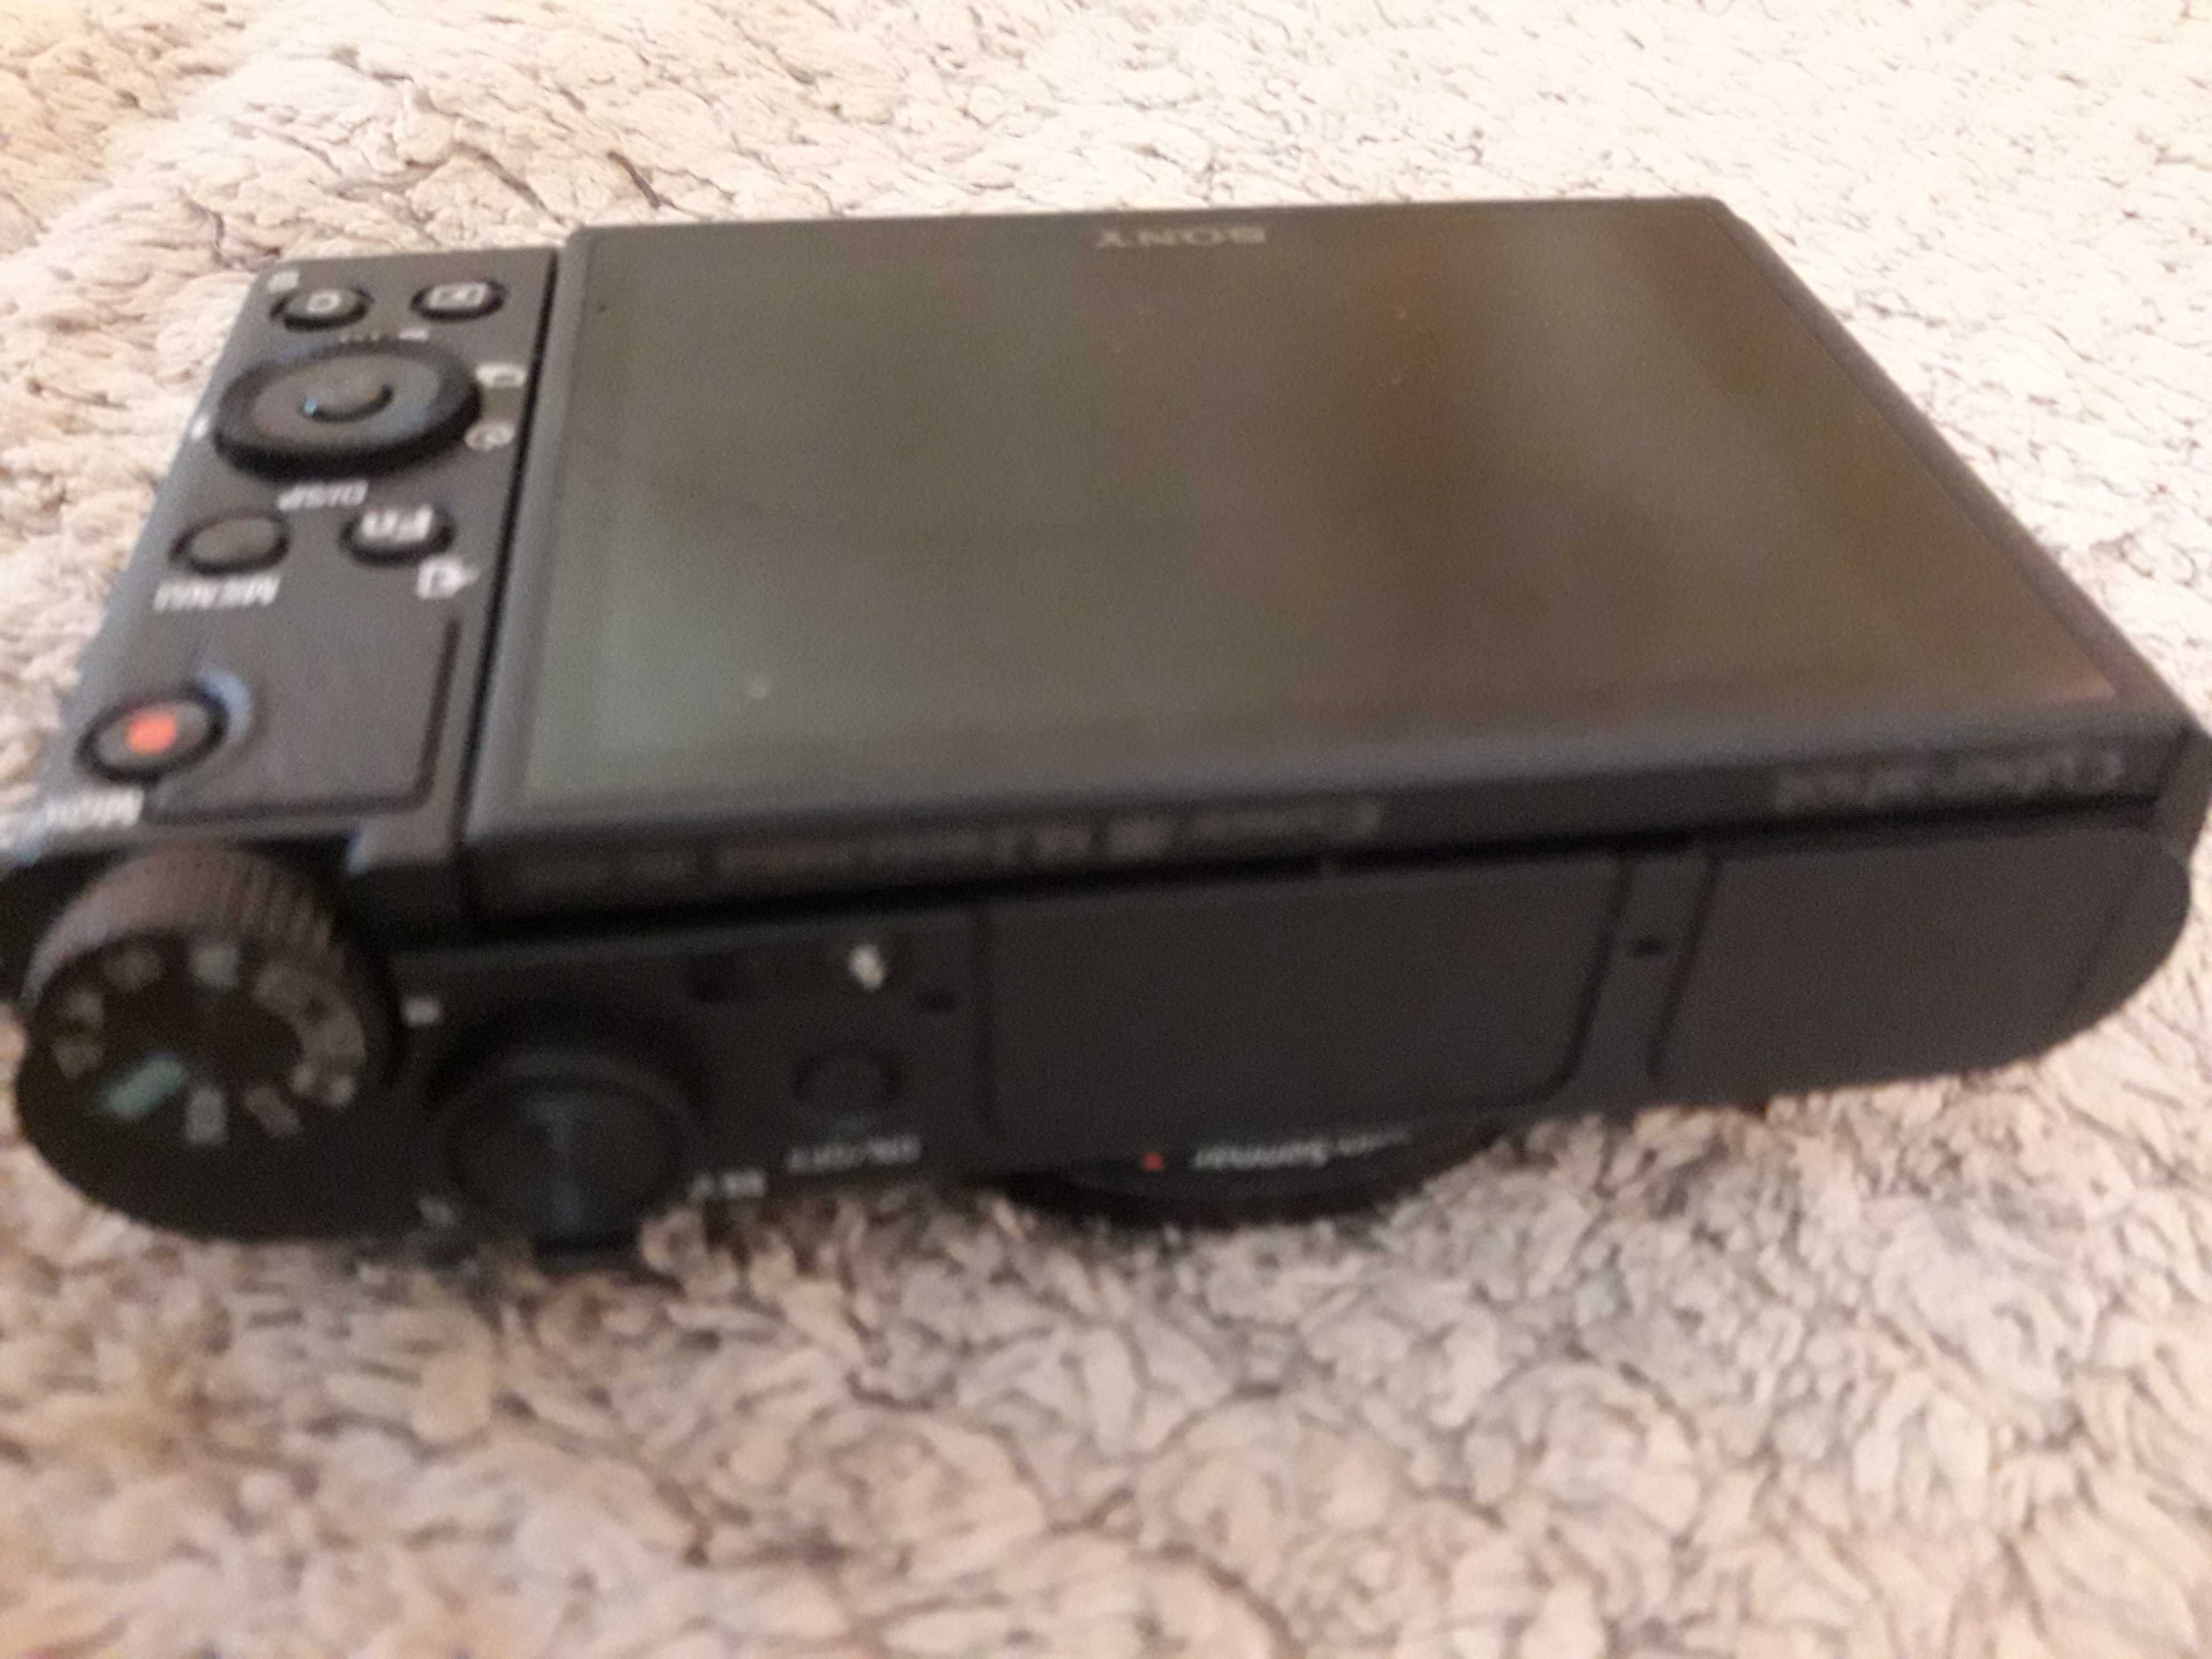 Aparat cyfrowy Sony DSC HX95